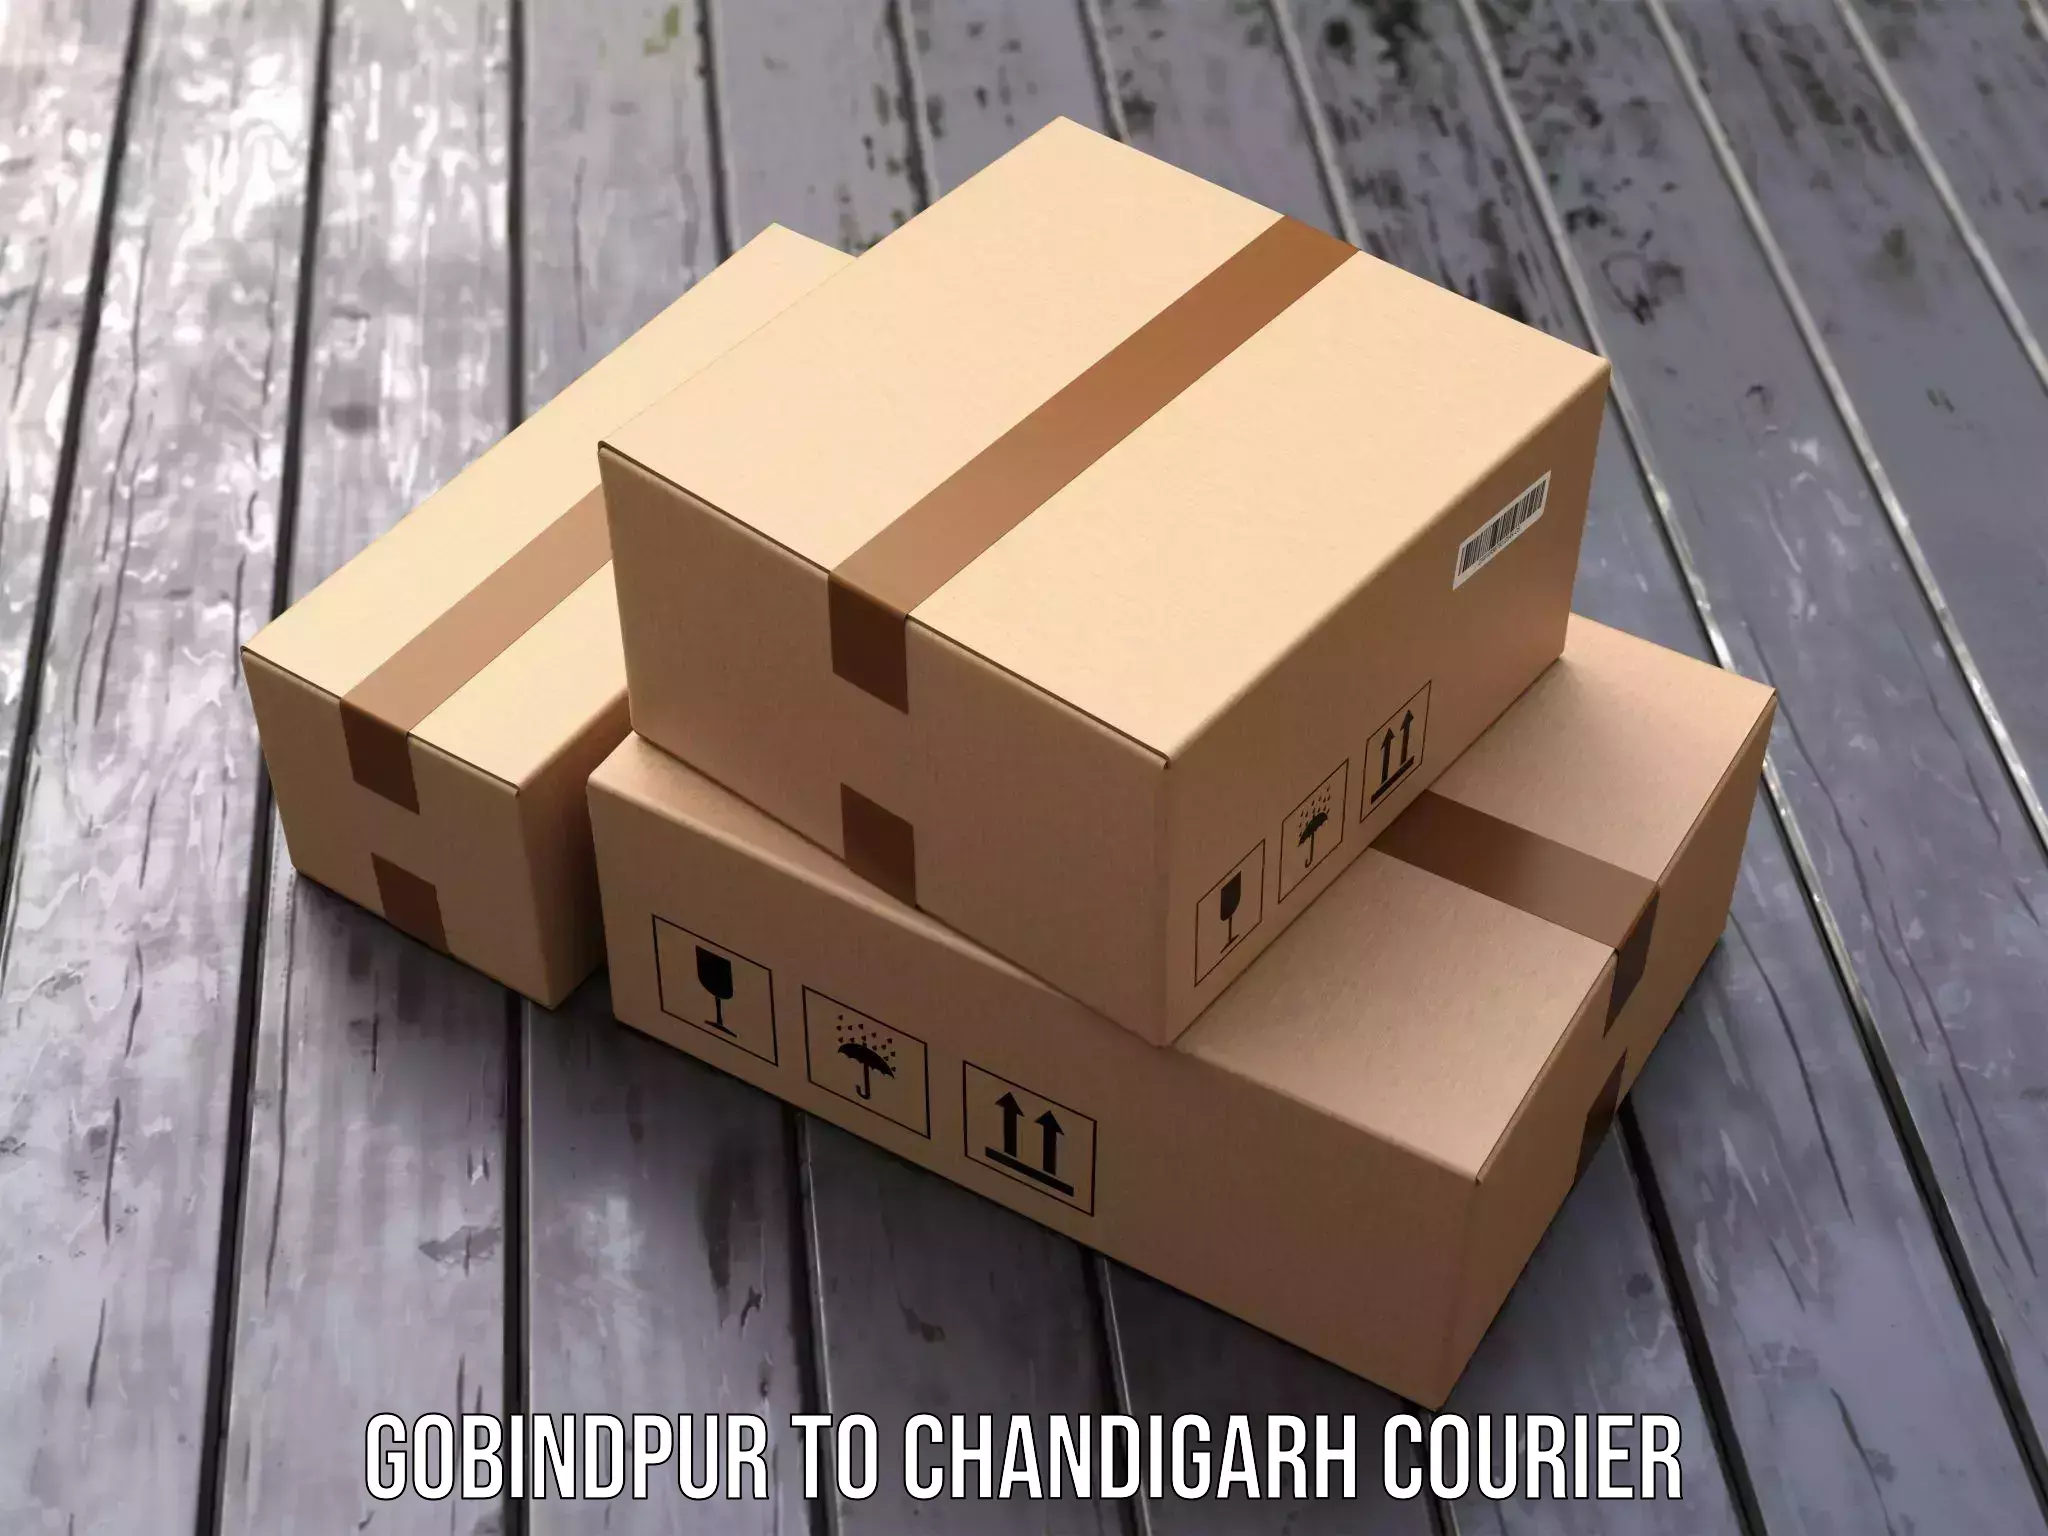 Ground shipping Gobindpur to Chandigarh